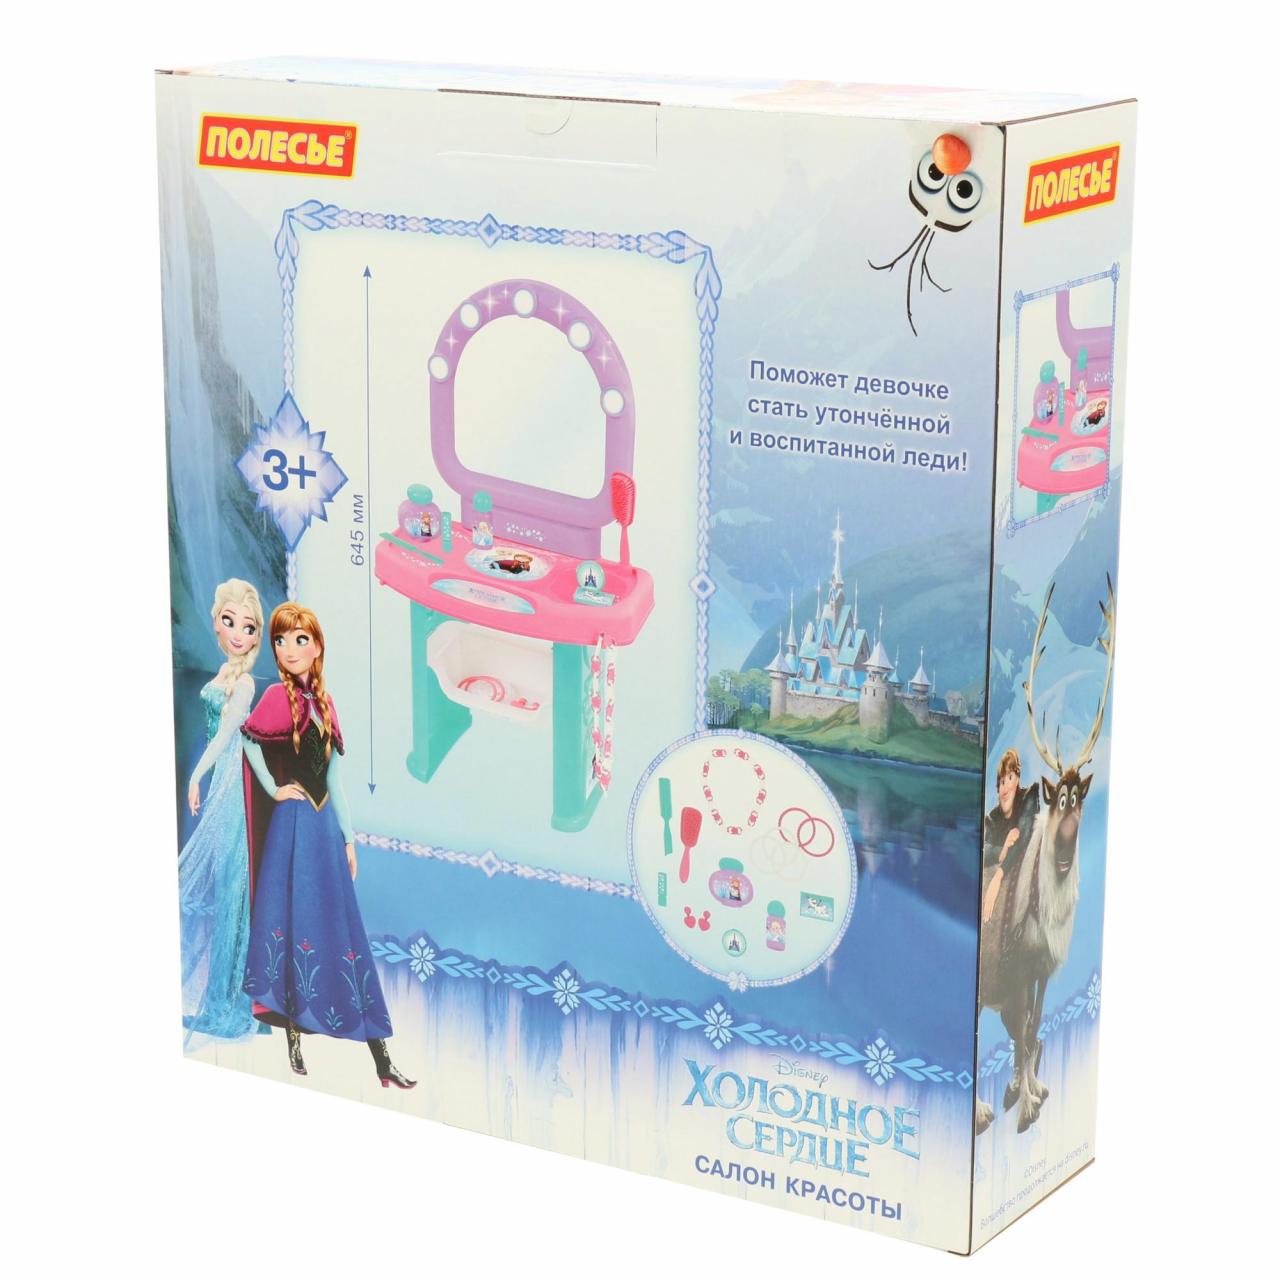 Набор Салон красоты из серии Disney Холодное сердце, в коробке  